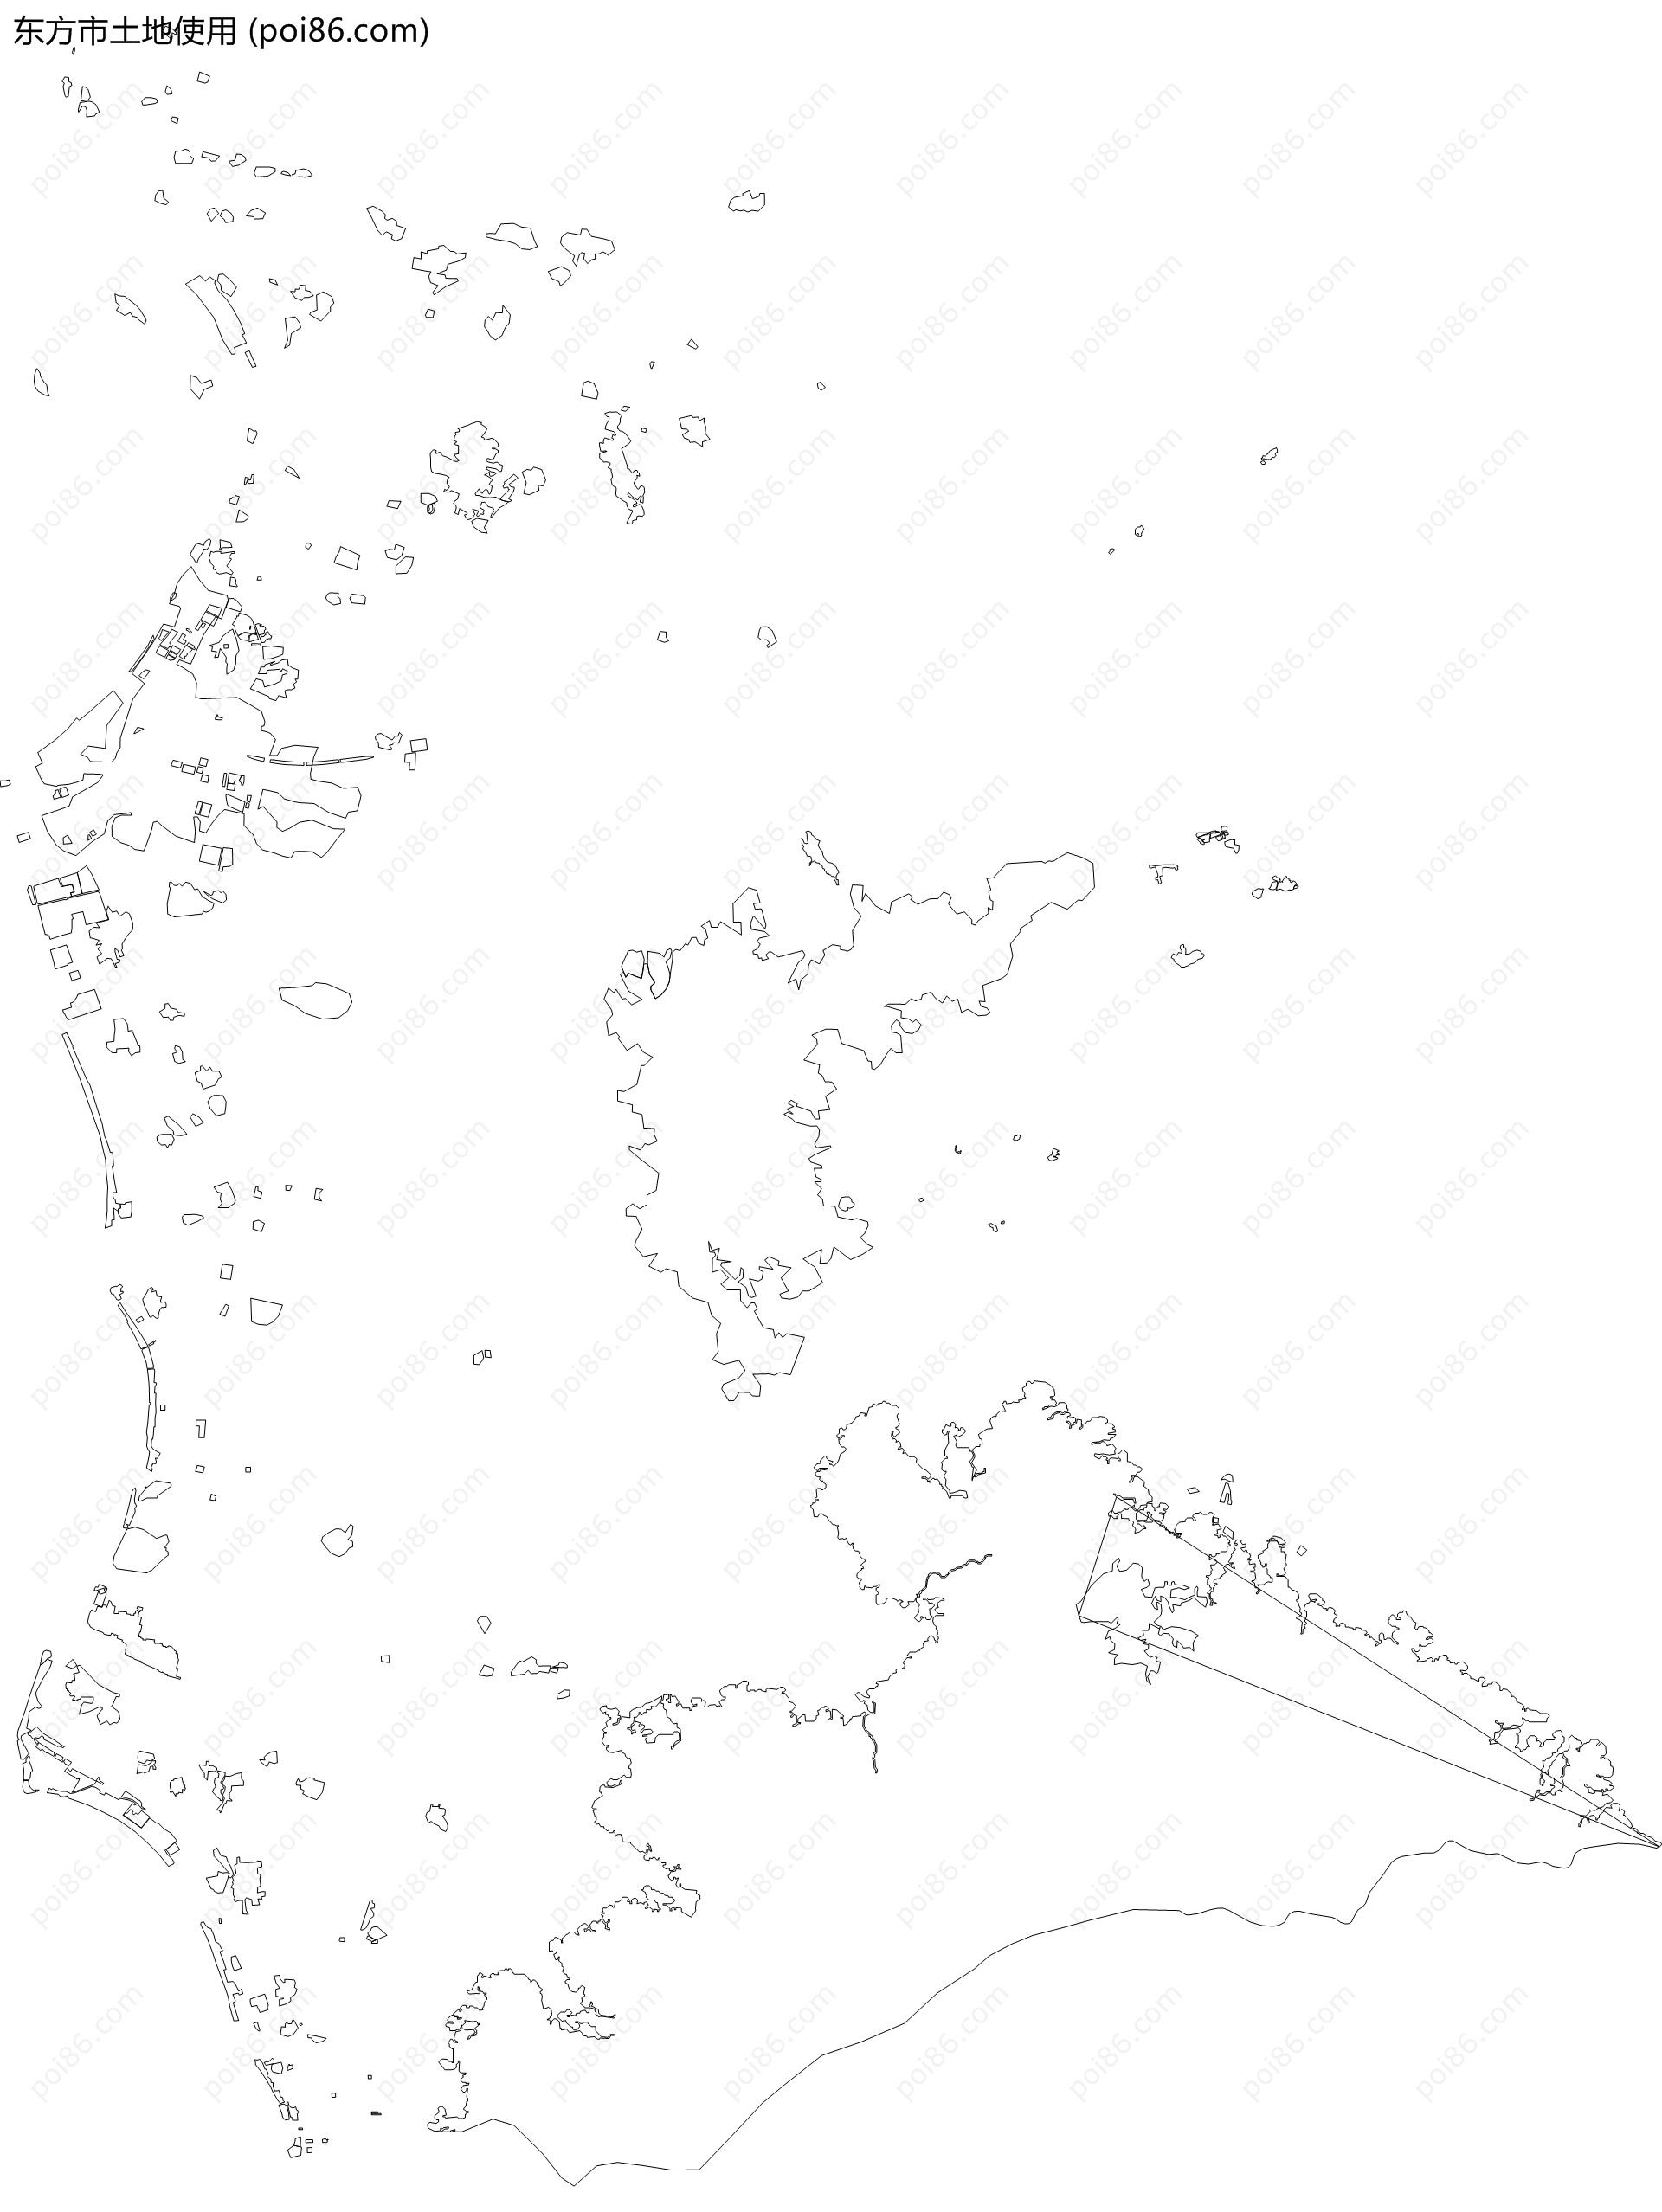 东方市土地使用地图